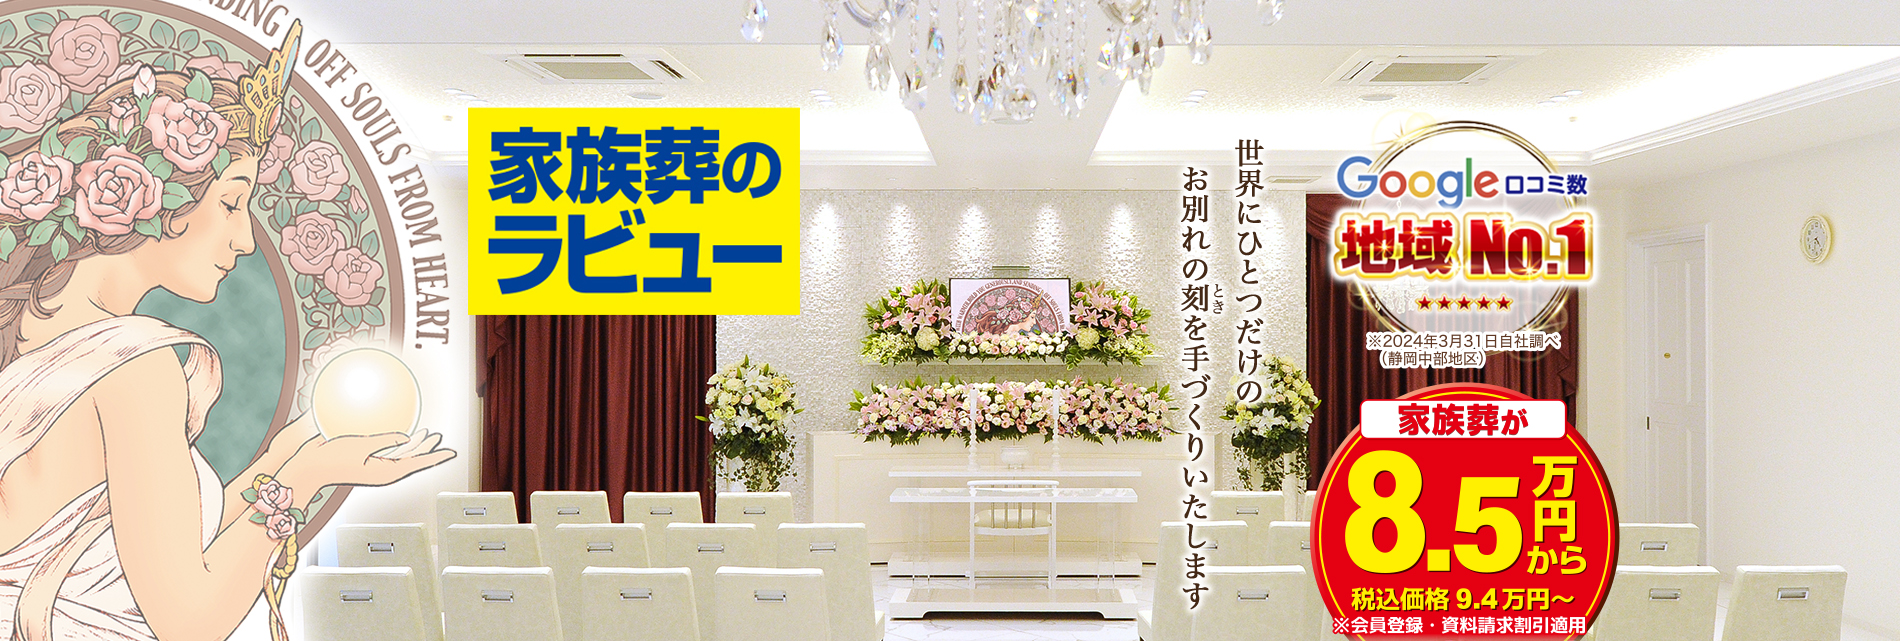 静岡県で葬儀・葬式なら家族葬のラビュー。世界に一つだけのお別れのときを手作り致します